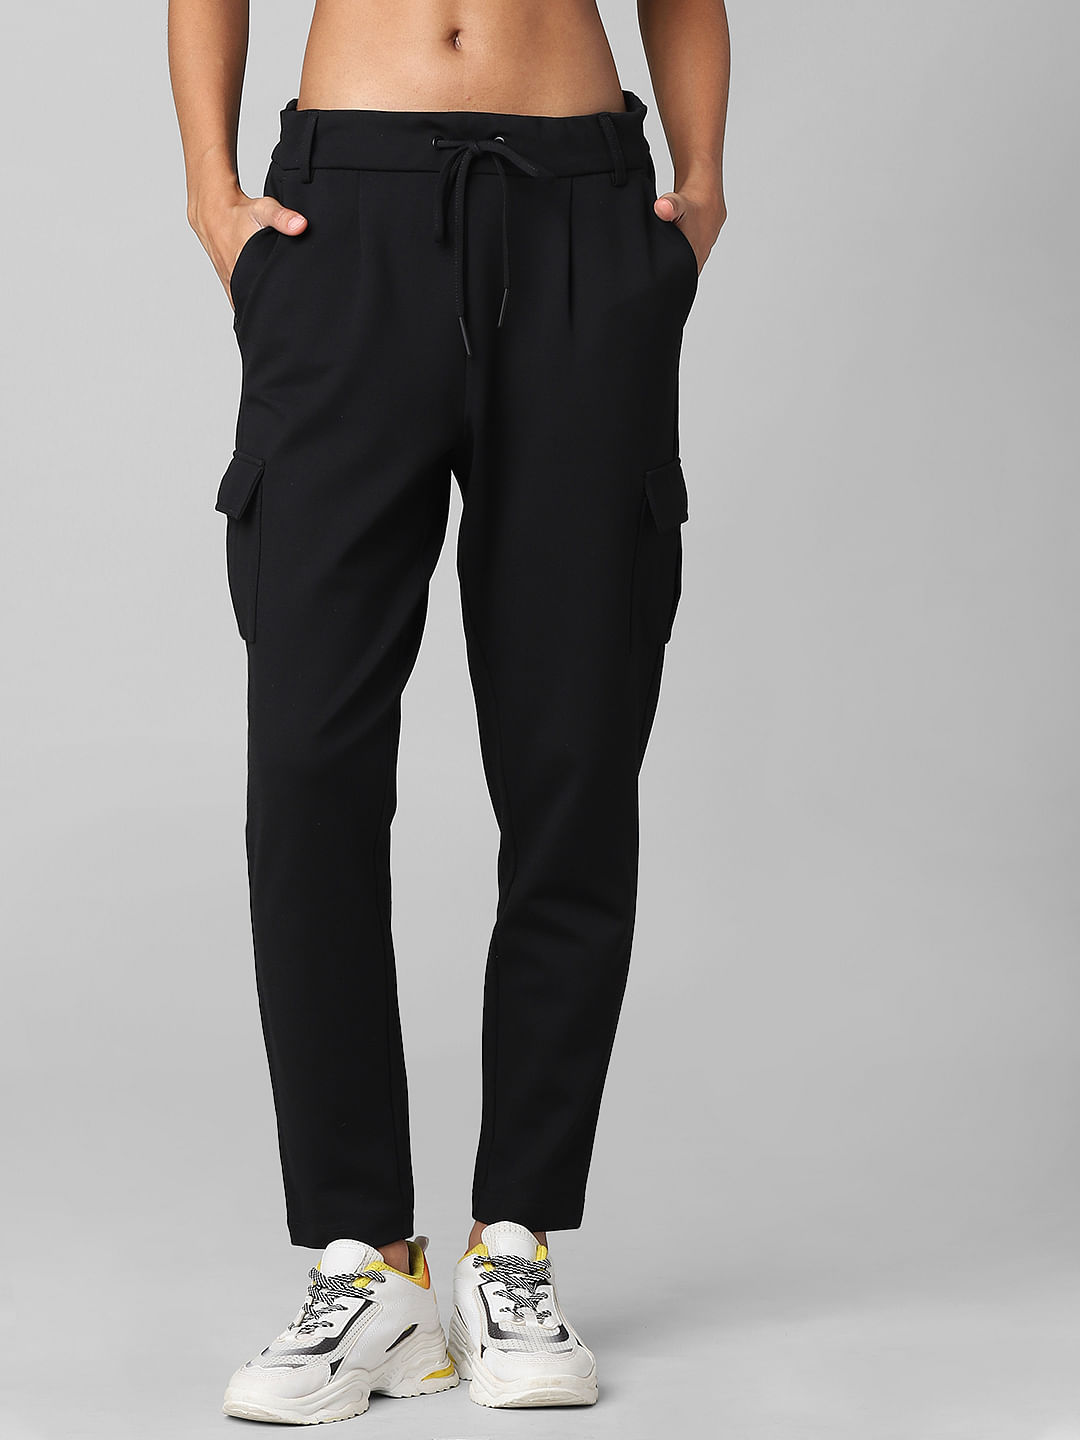 Designer Cargo Pants for Women | Neiman Marcus